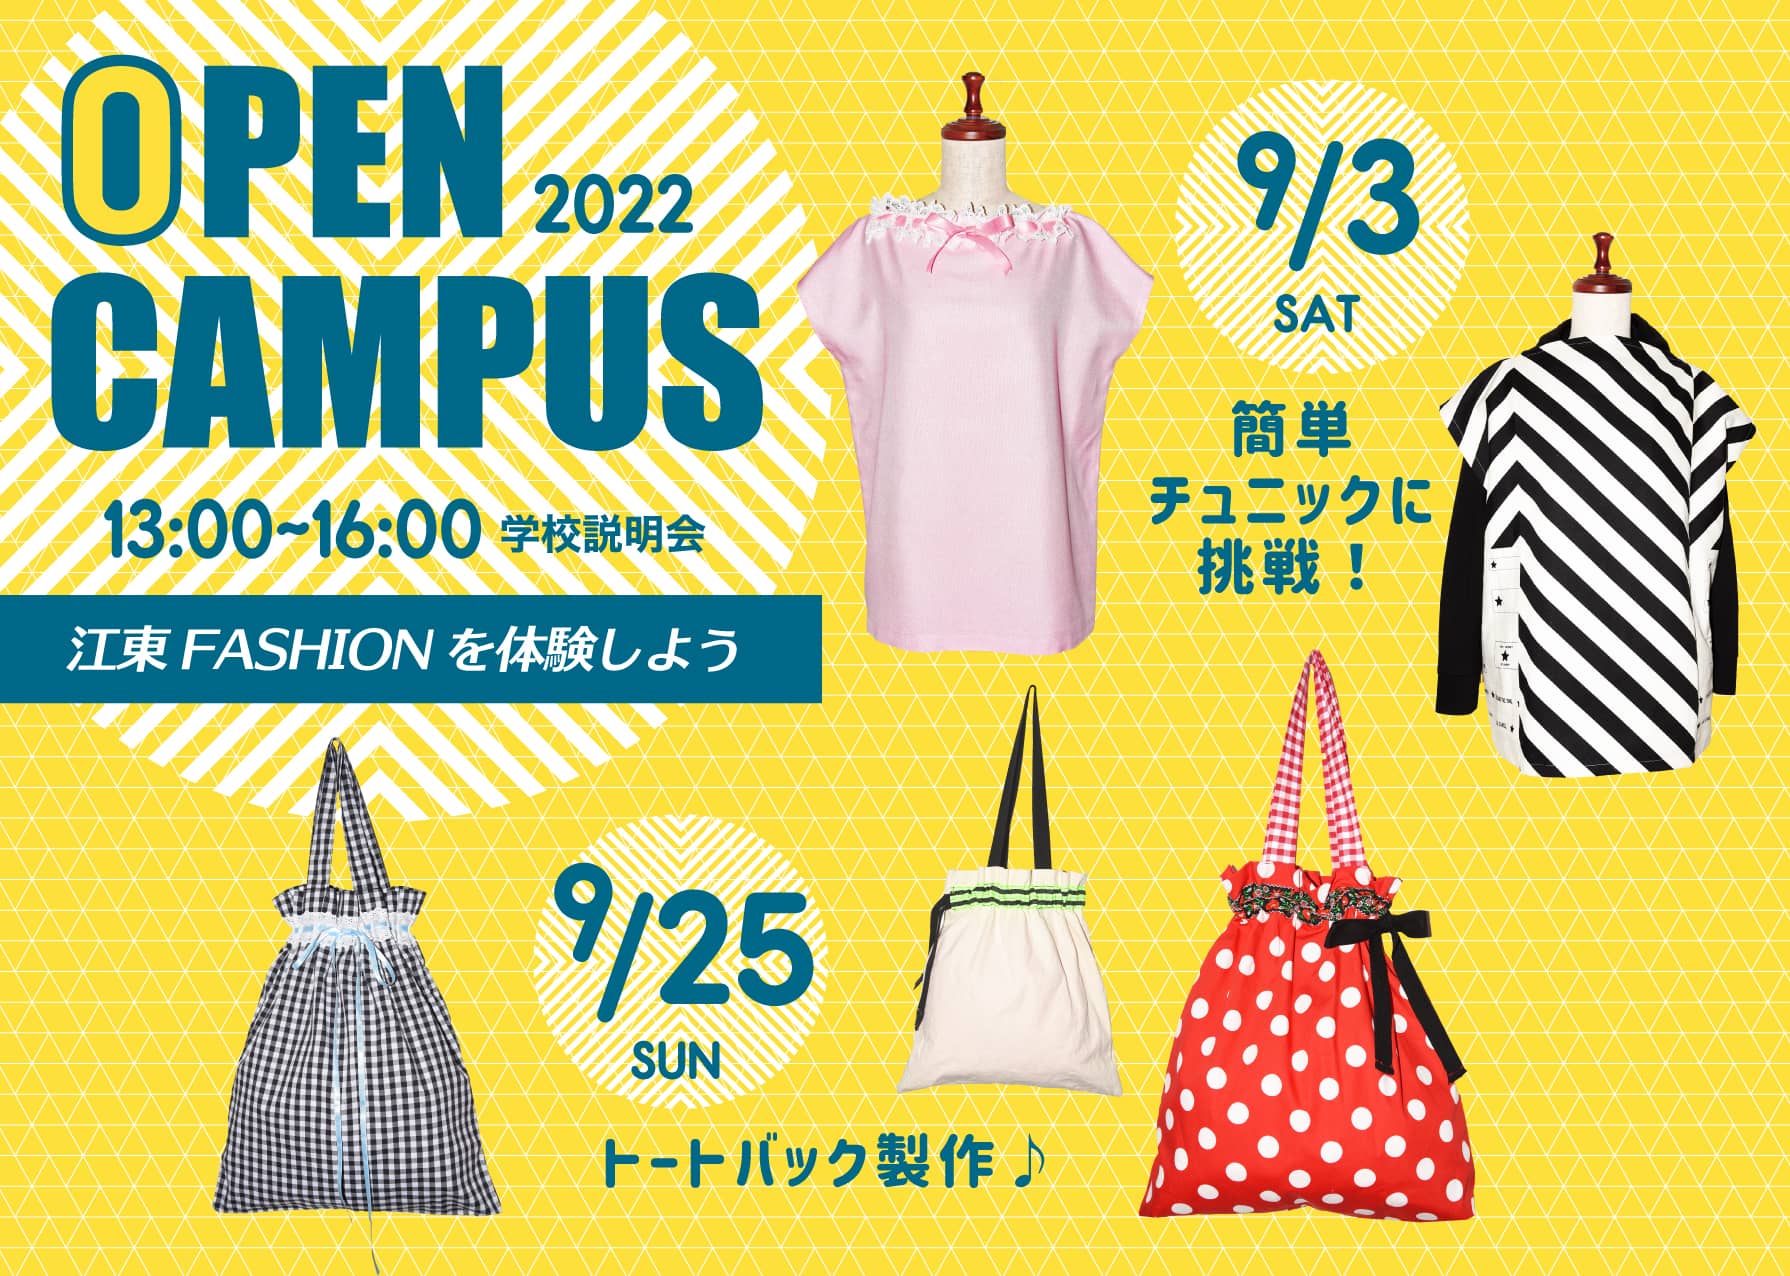 江東服飾高等専修学校 - オープンキャンパス 2022年9月